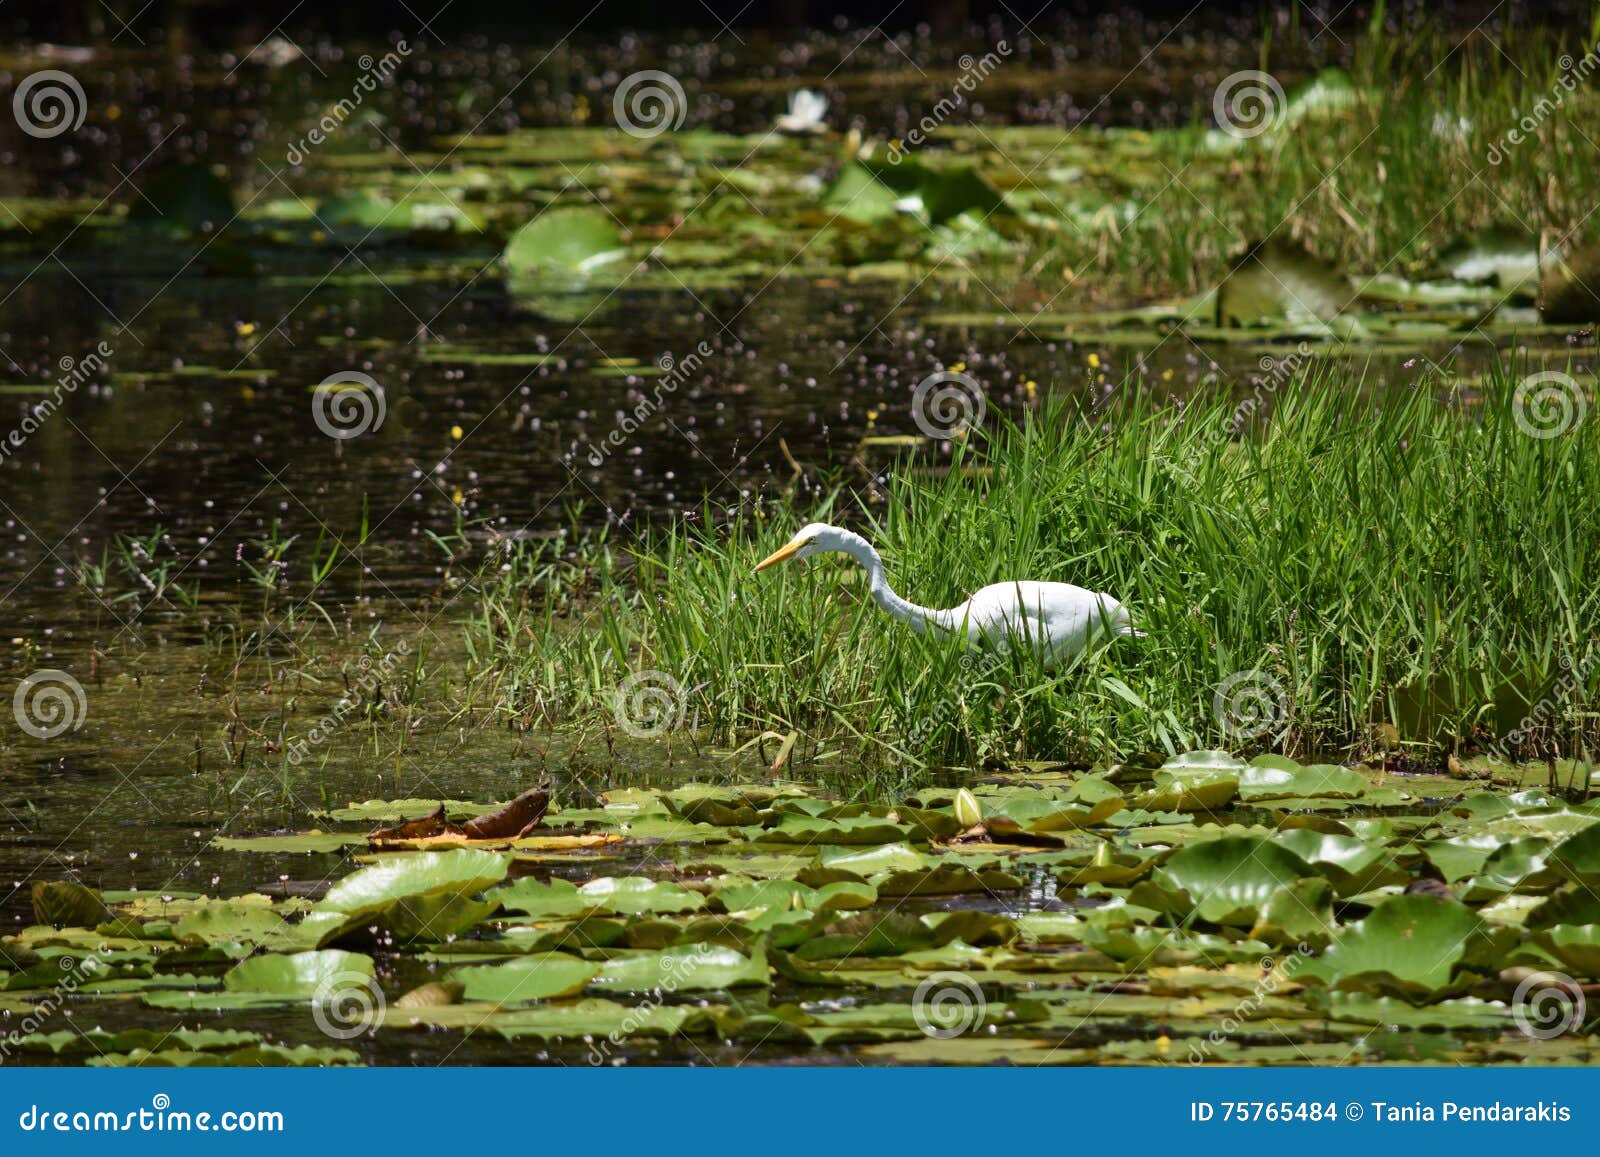 great egret feeding in a florida wetlands